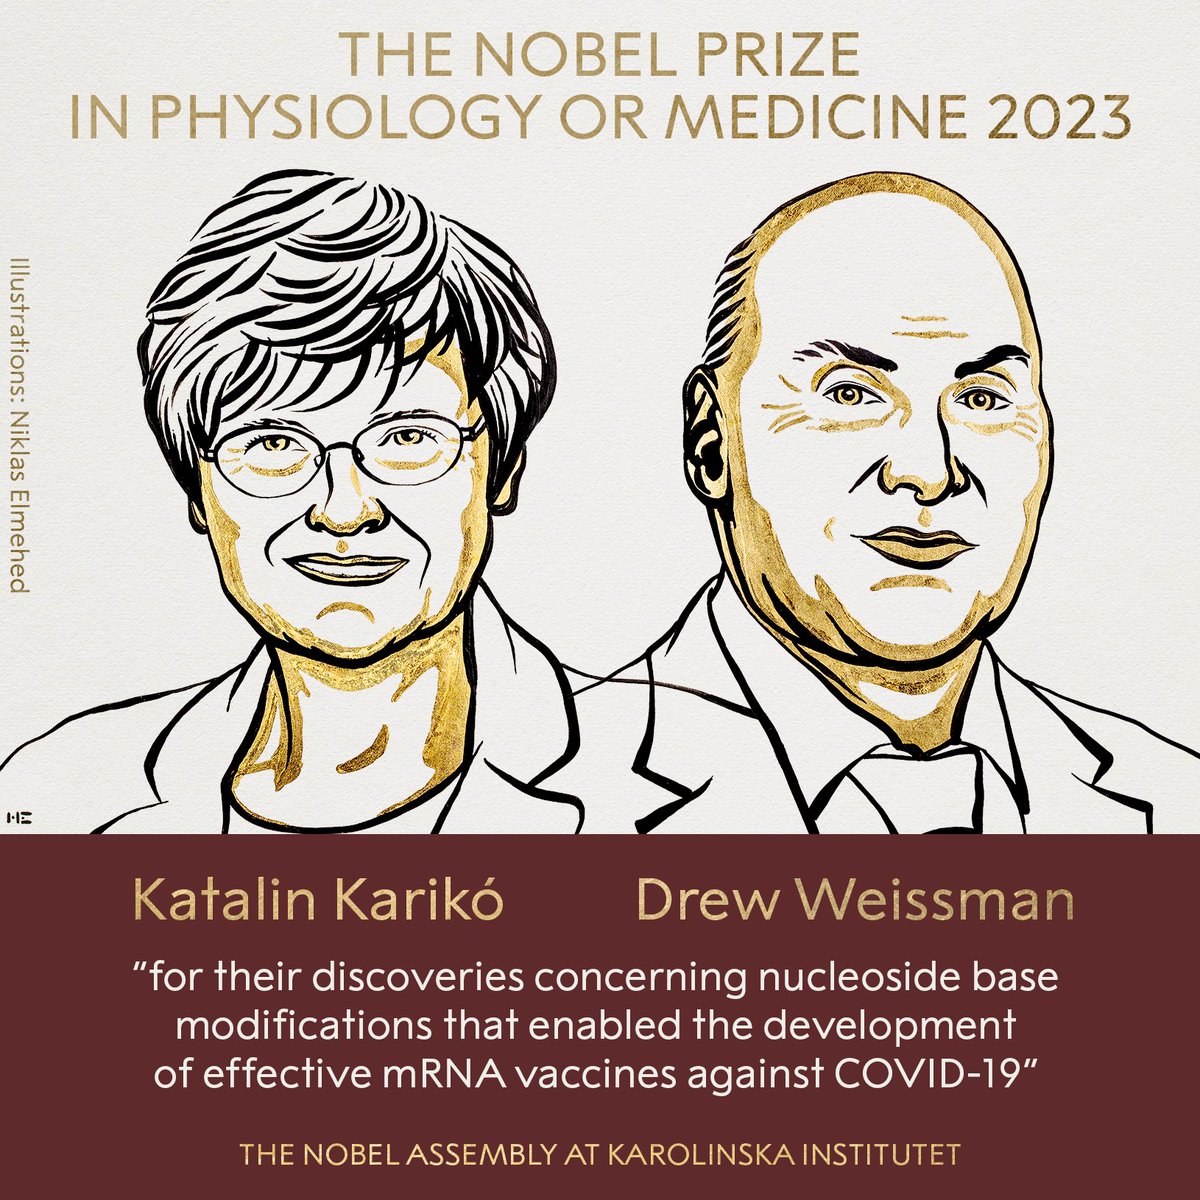 #PremioNobel de Medicina 2023 para Katalin Karikó y Drew Weissman, cuyos descubrimientos fueron fundamentales para desarrollar #vacunas de ARNm eficaces contra la #COVID-19.

#FIBHUG con la #Investigación en #Salud
 #GetafeInvestiga
 #InvestigaciónBiomédica
 #HospitalGetafe